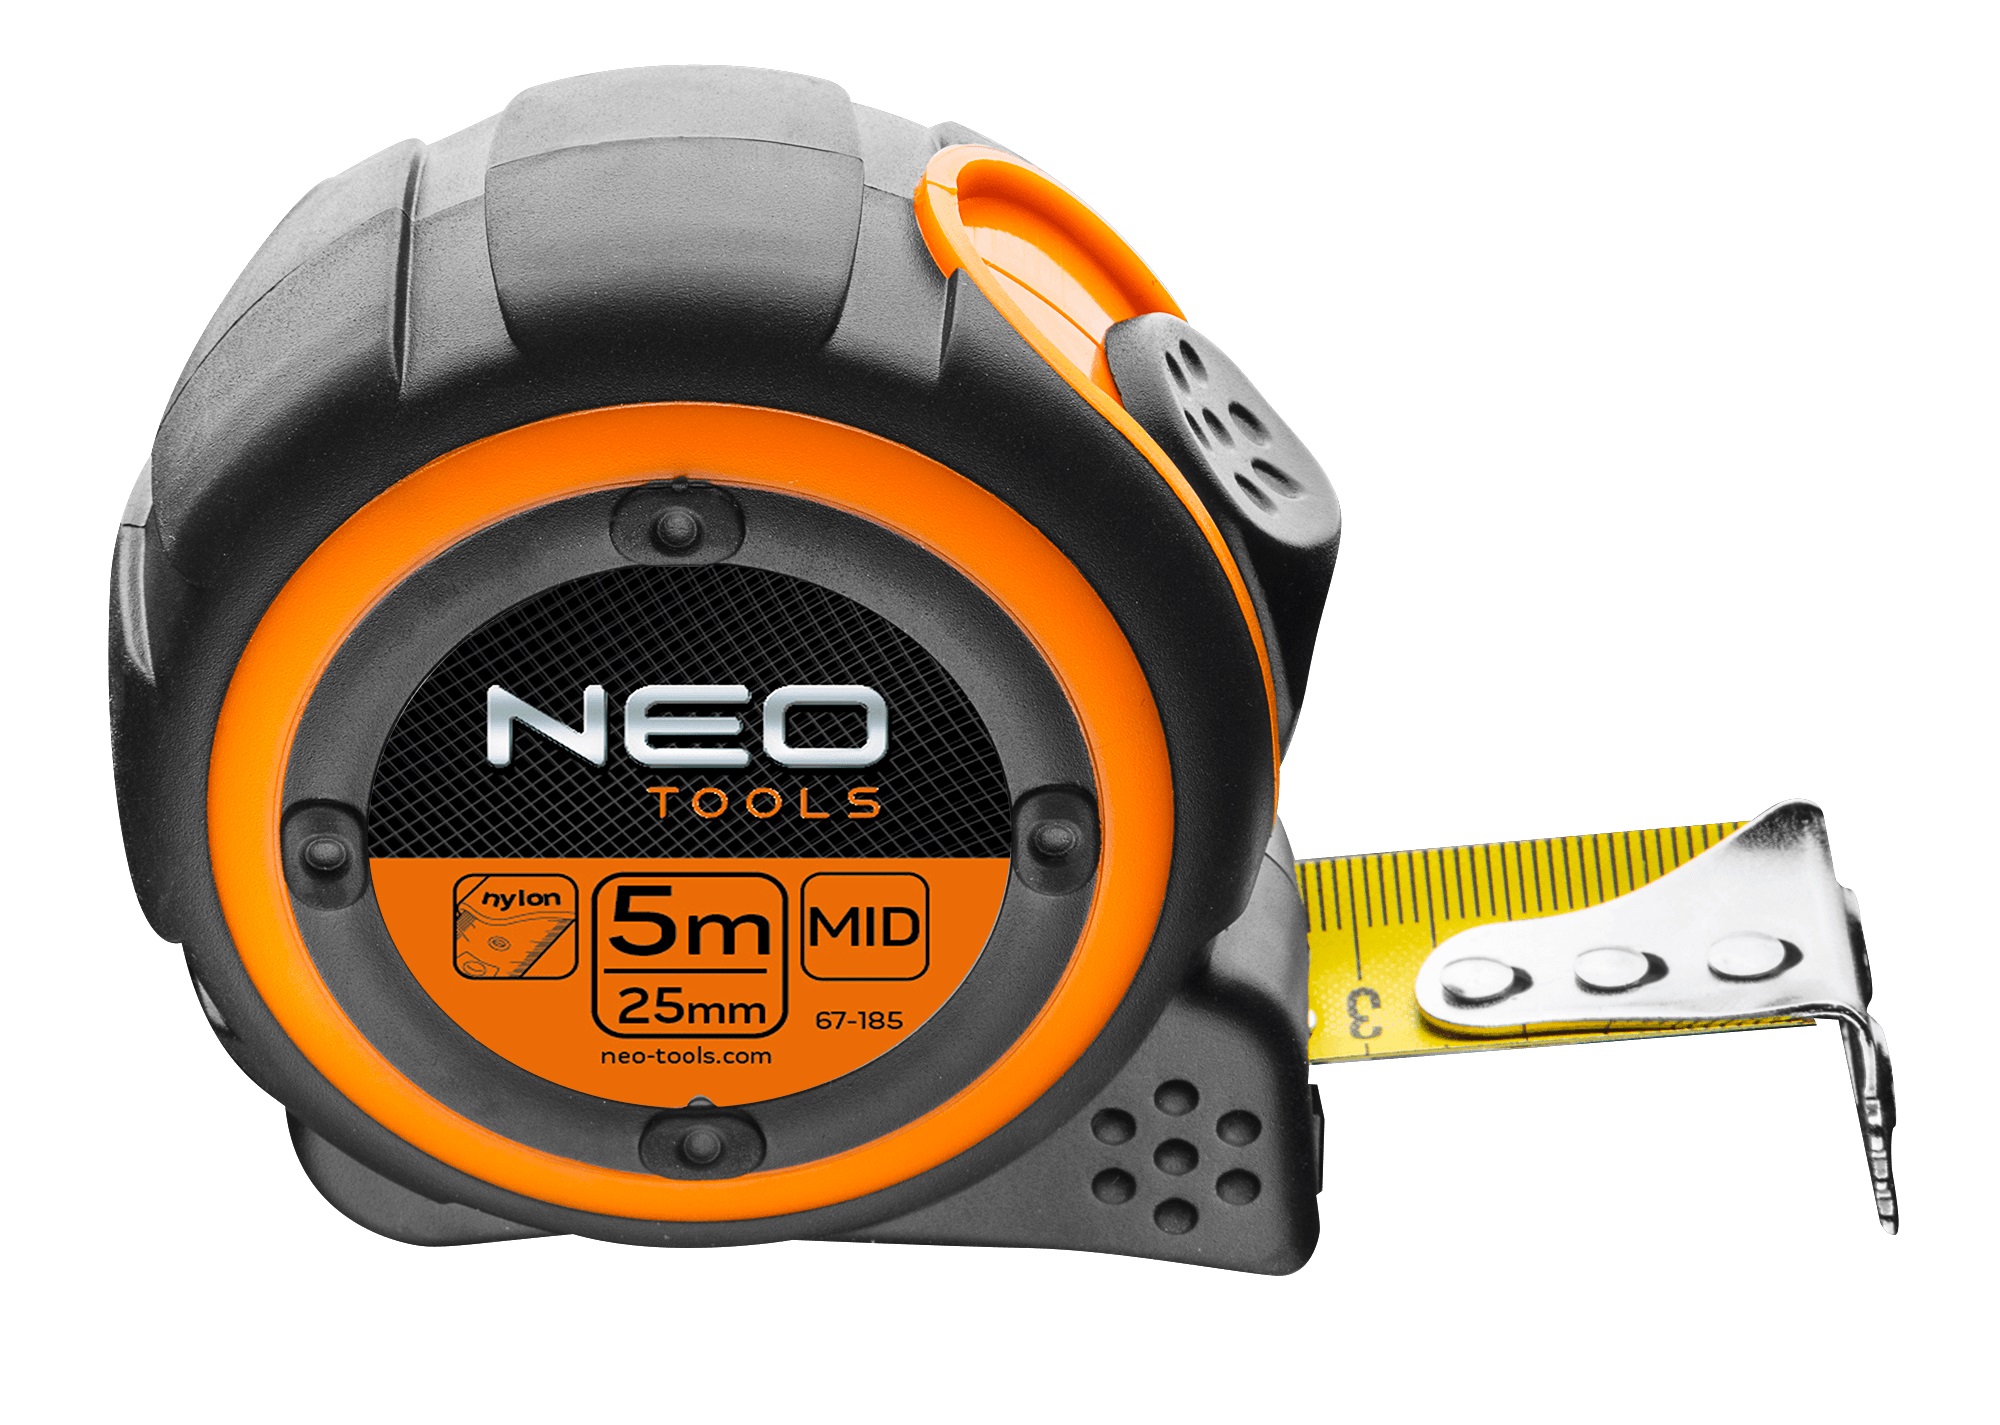 Рулетка Neo Tools 67-185 в Житомирі